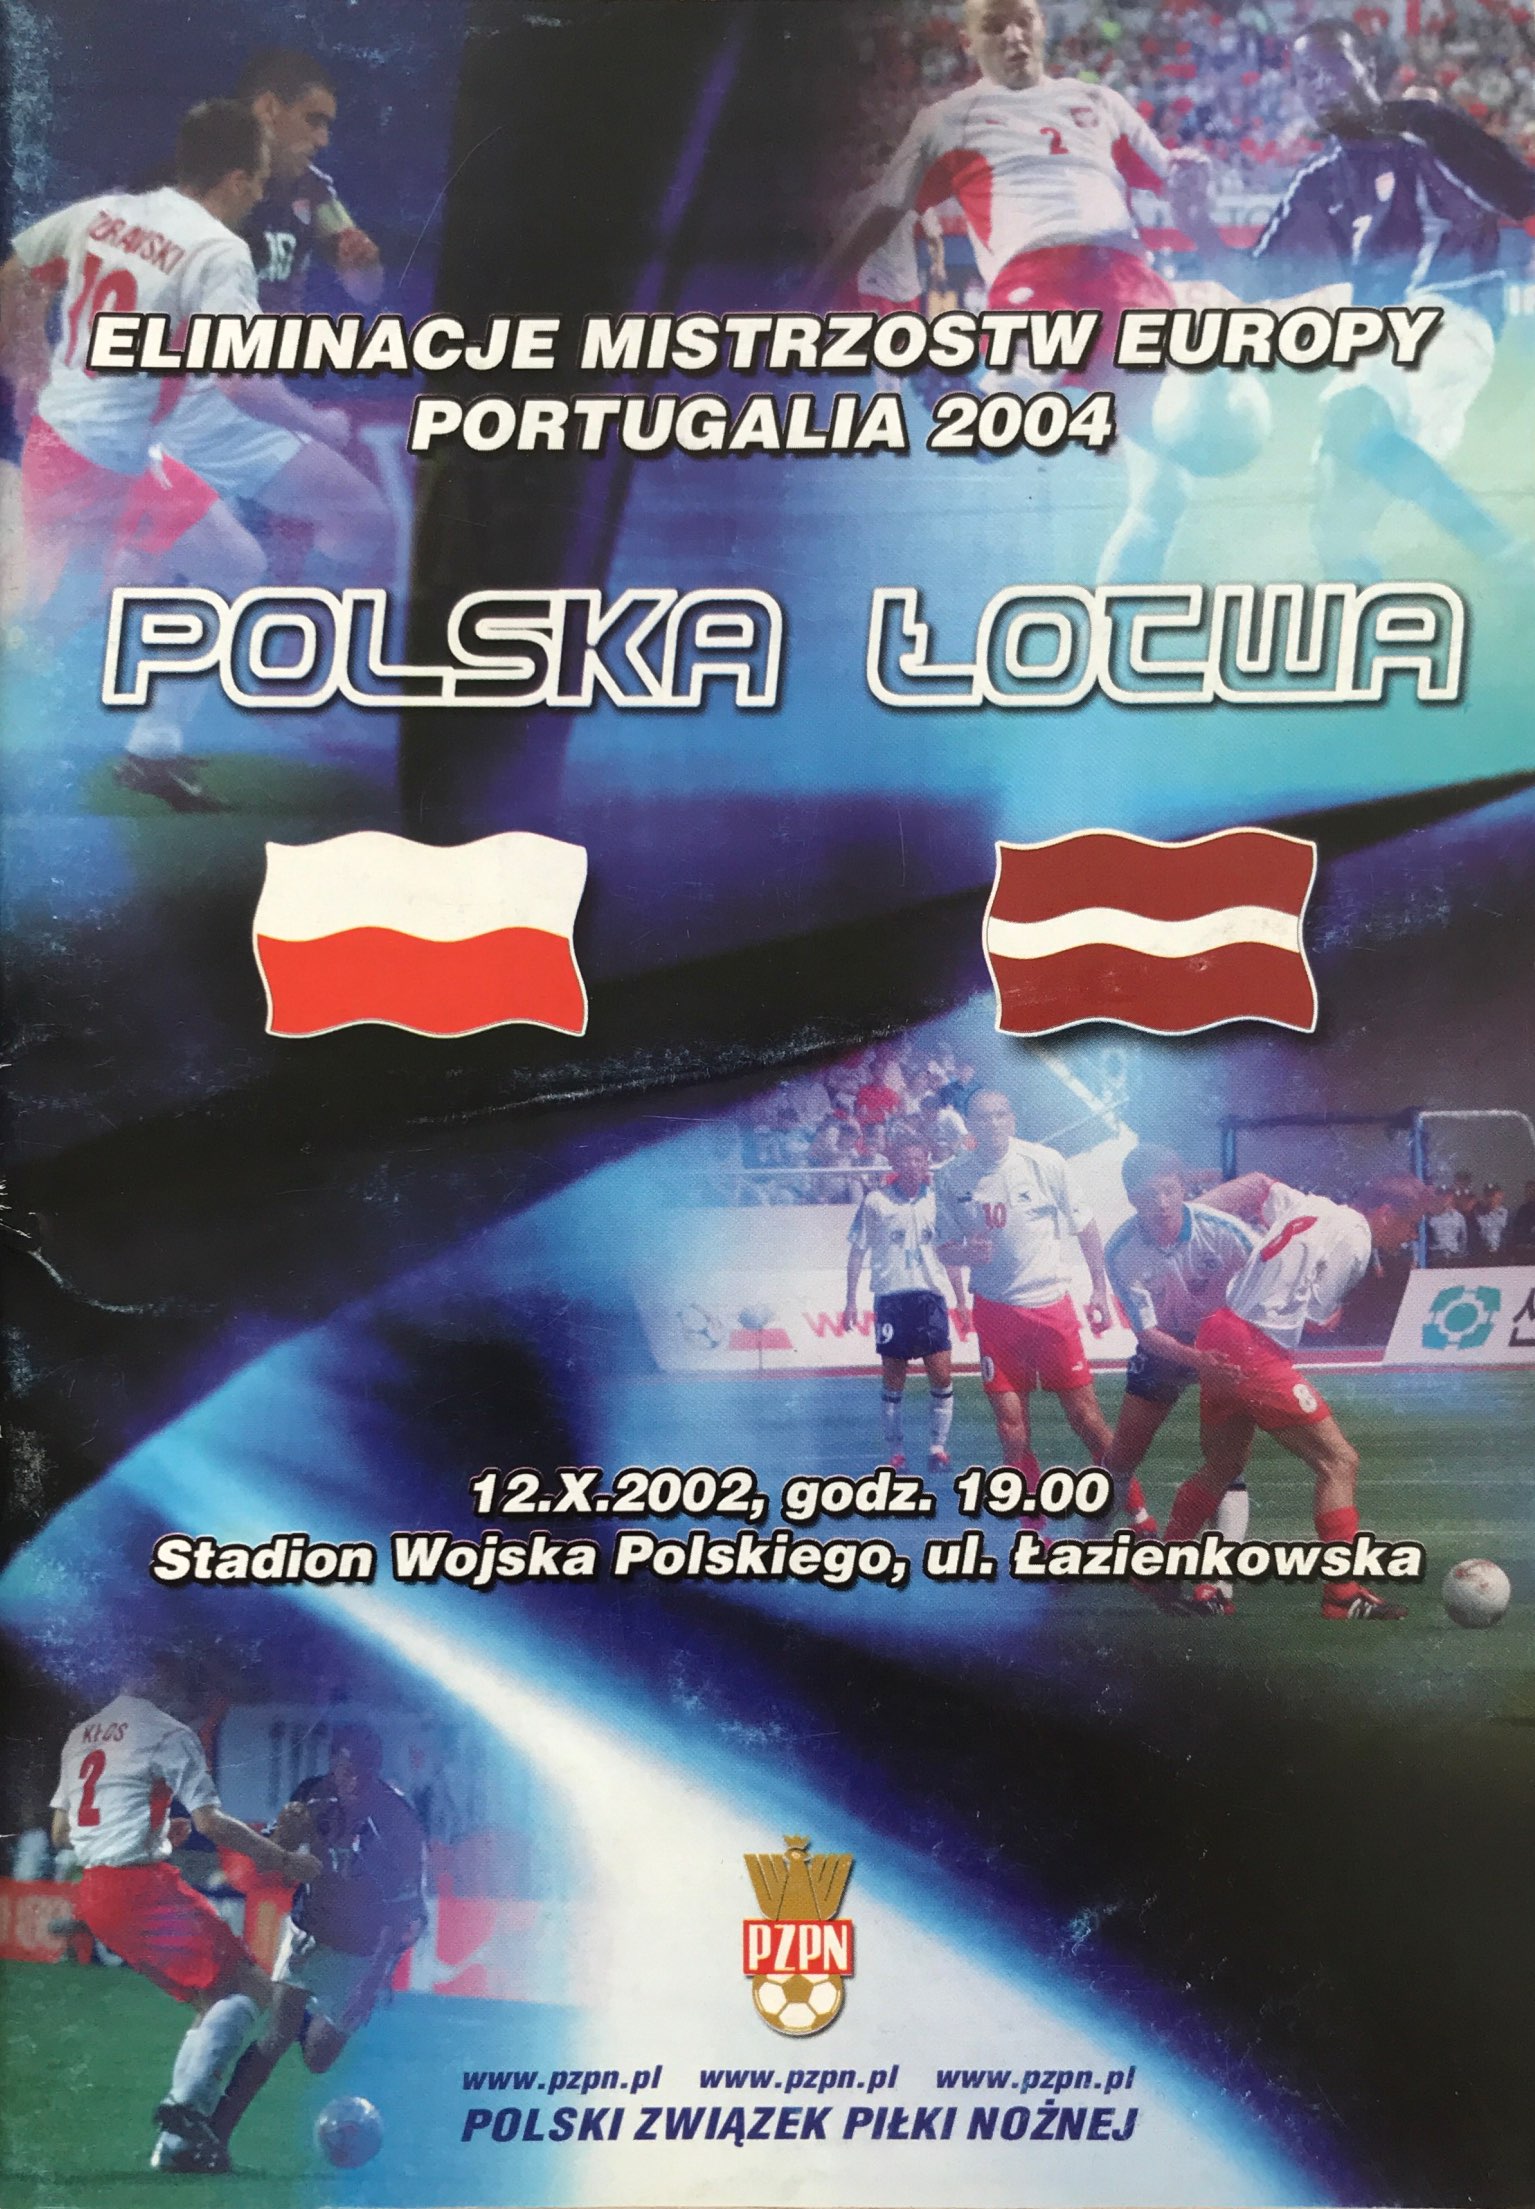 Program meczowy Polska - Łotwa 0:1 (12.10.2002).